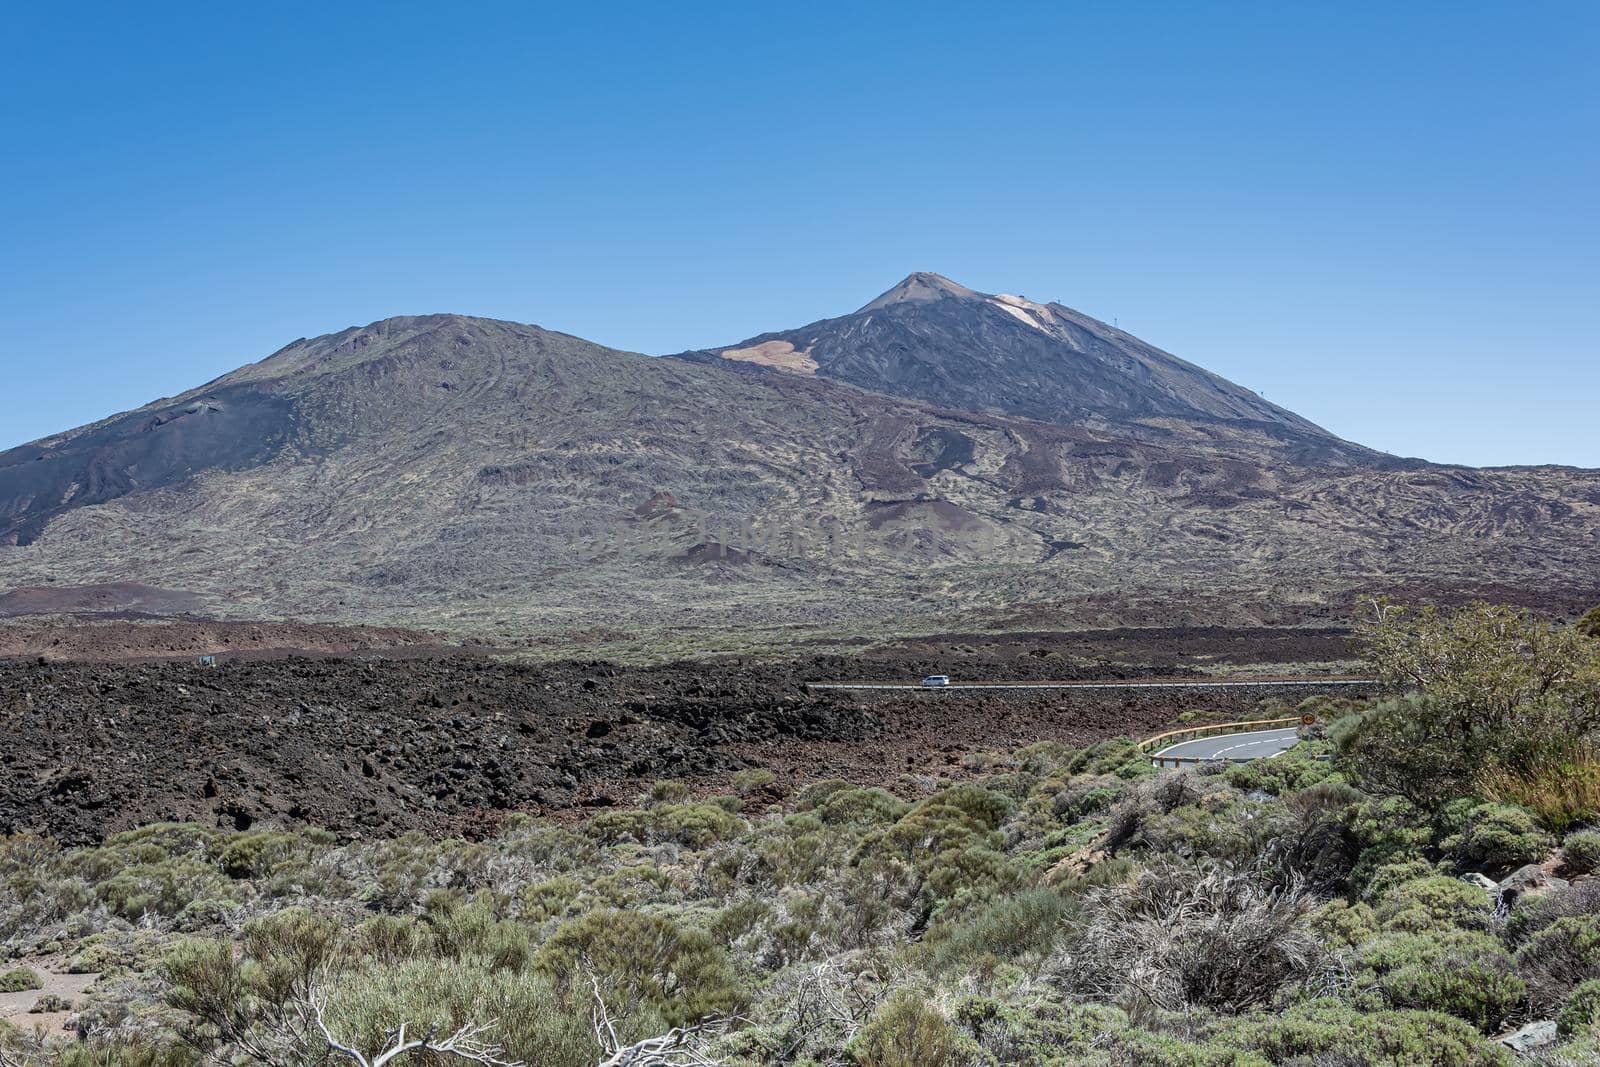 Foothills of the Teide volcano (Tenerife, Spain) by Grommik